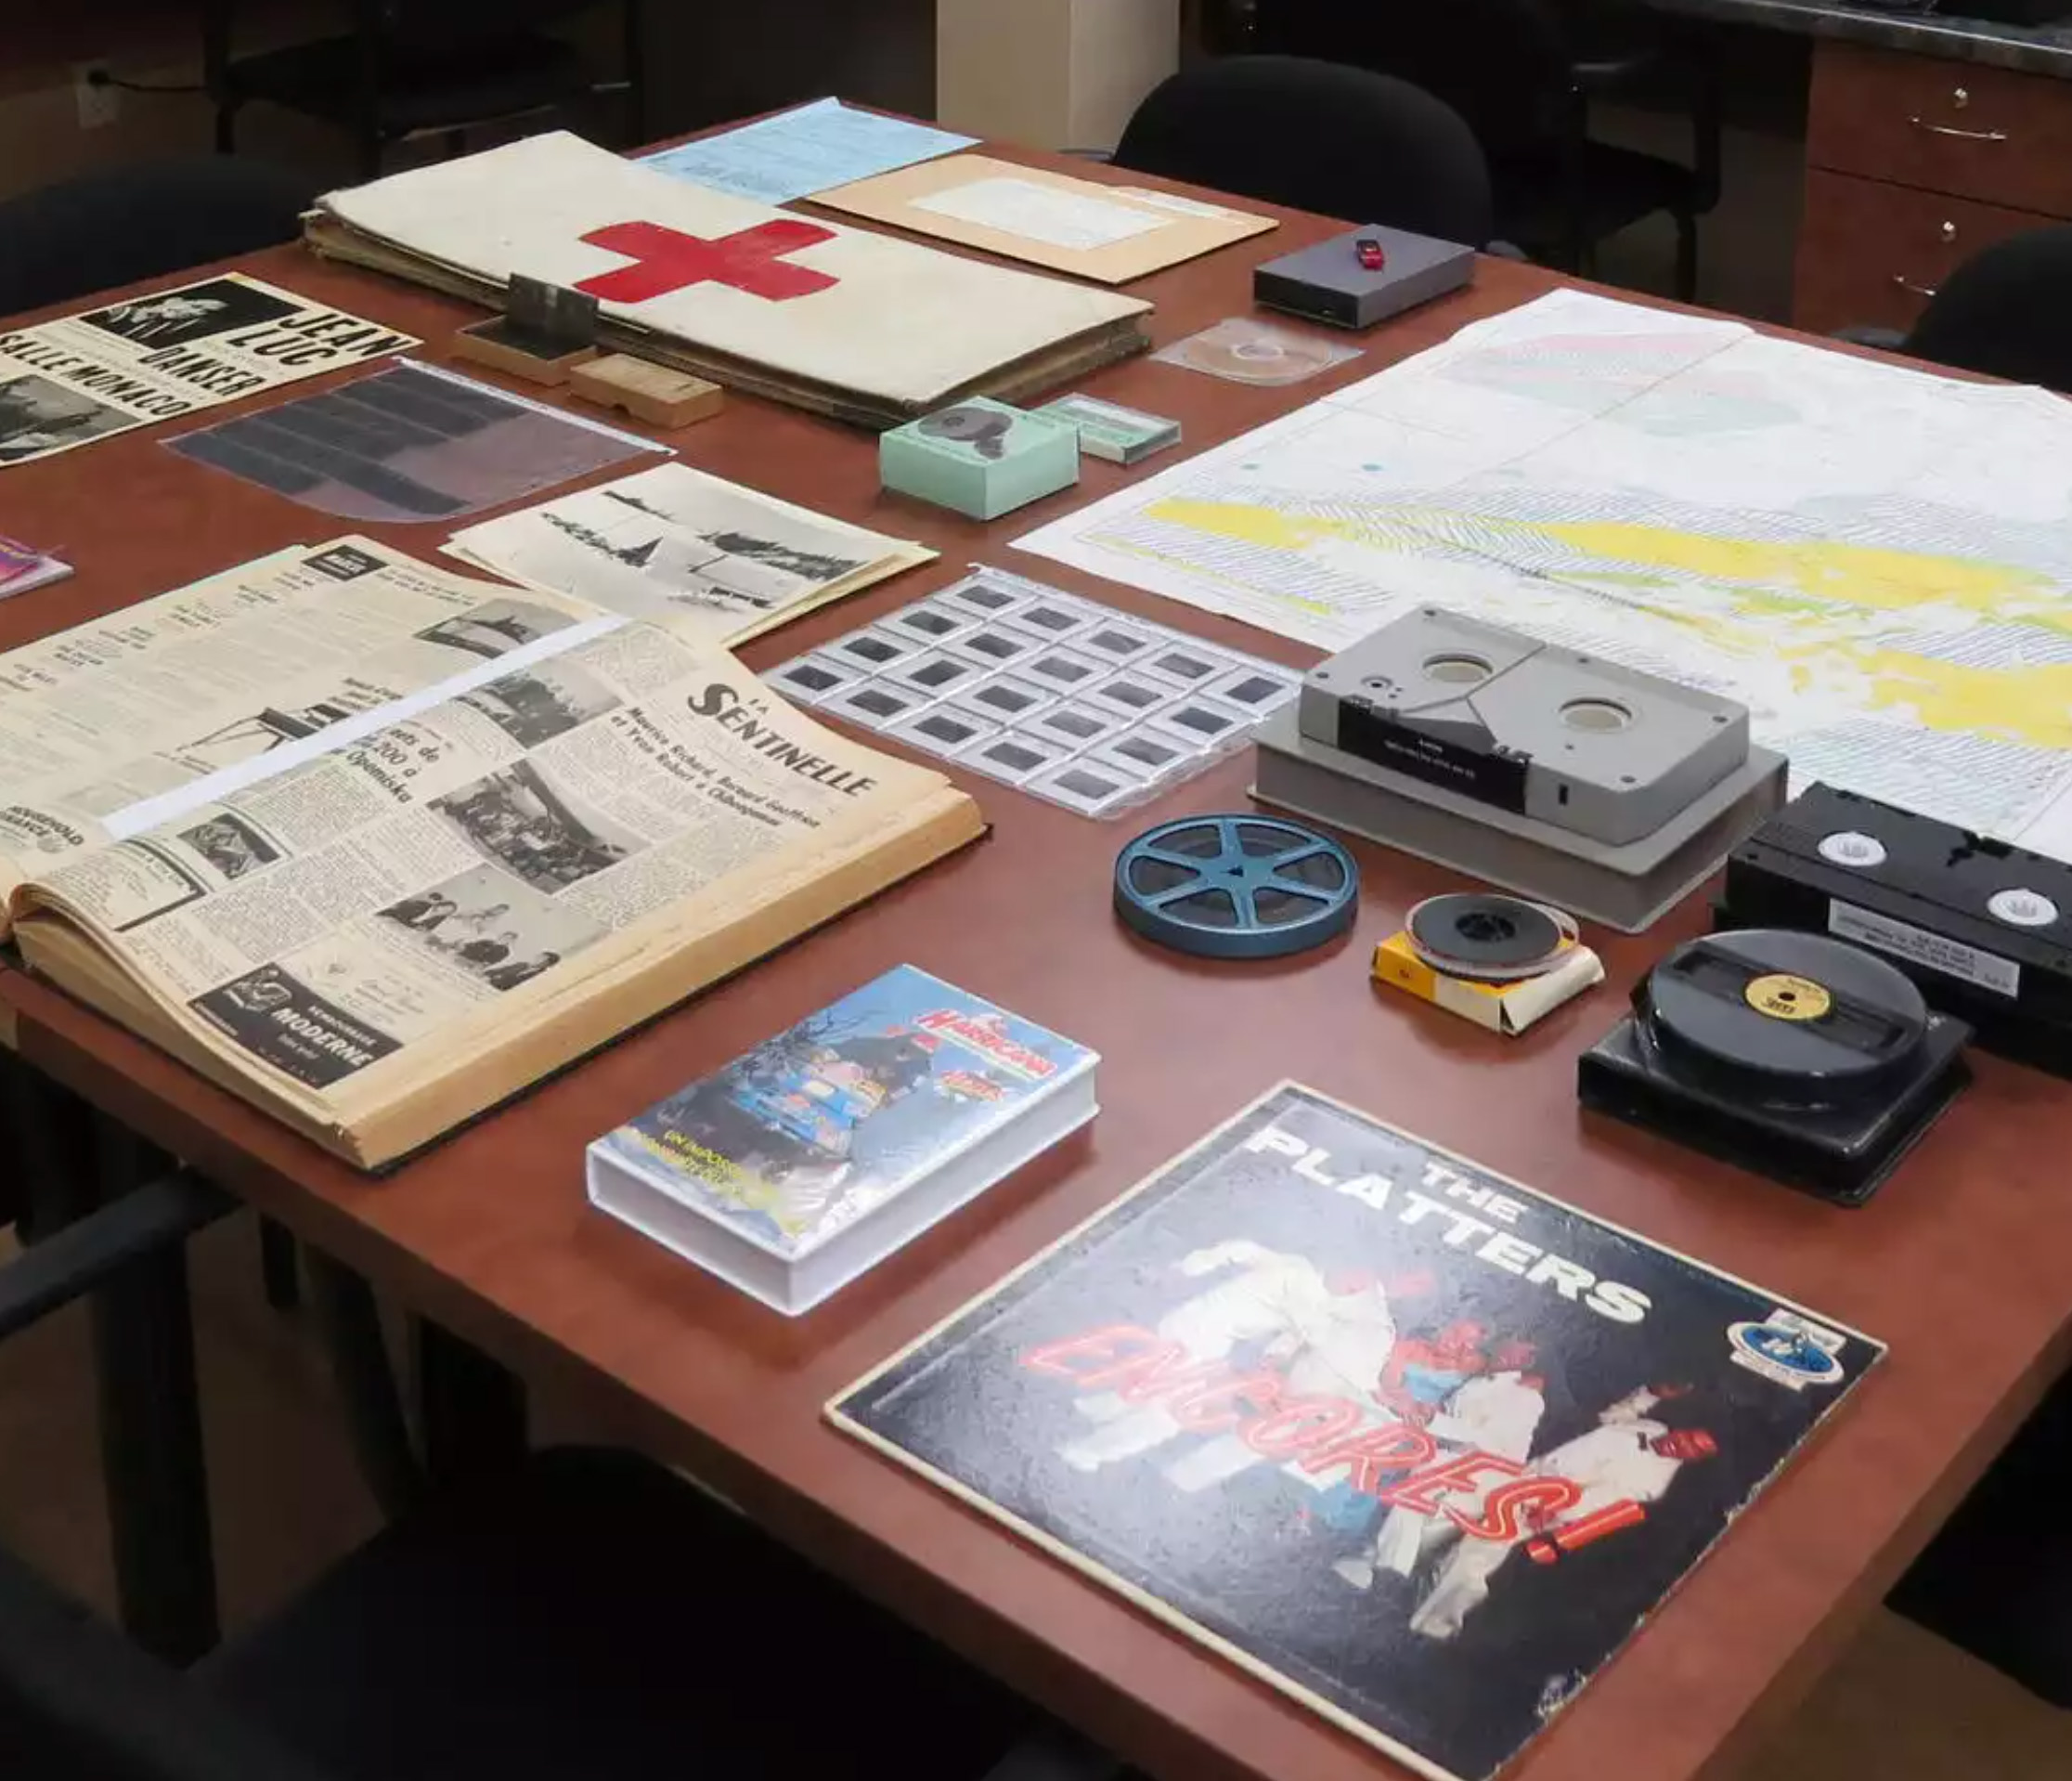 Des archives (diapositives, bandes magnétiques, négatifs, imprimés) exposés sur une table 